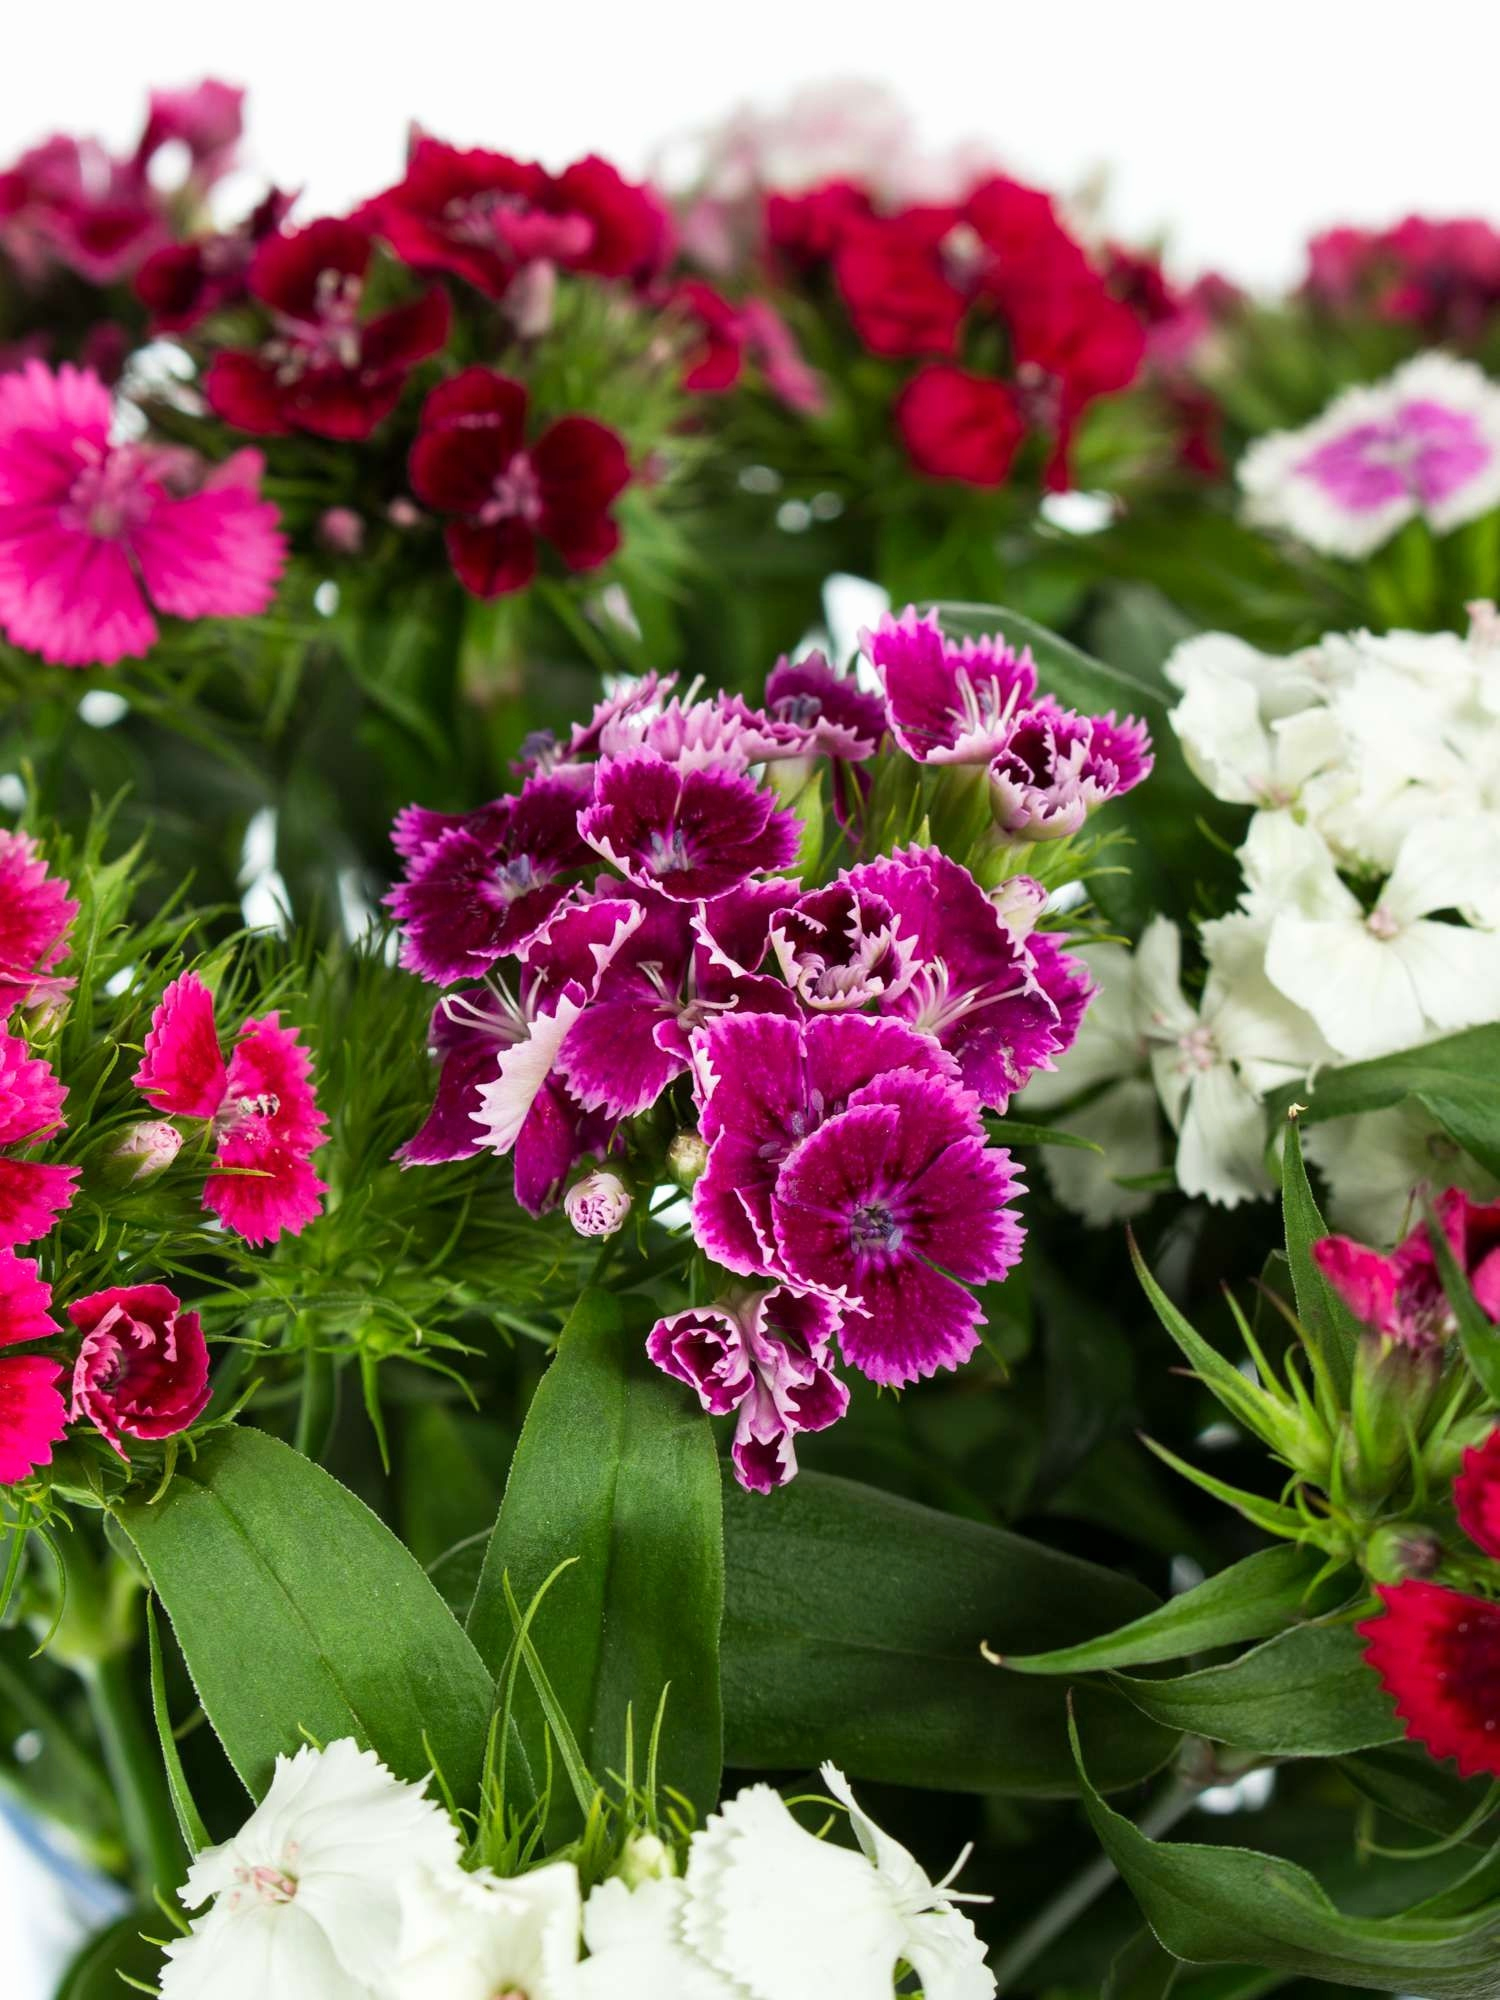 Hintergrundbilder Blumen Kostenlos Herunterladen Schön 35 für Bilder Blumen Kostenlos Downloaden